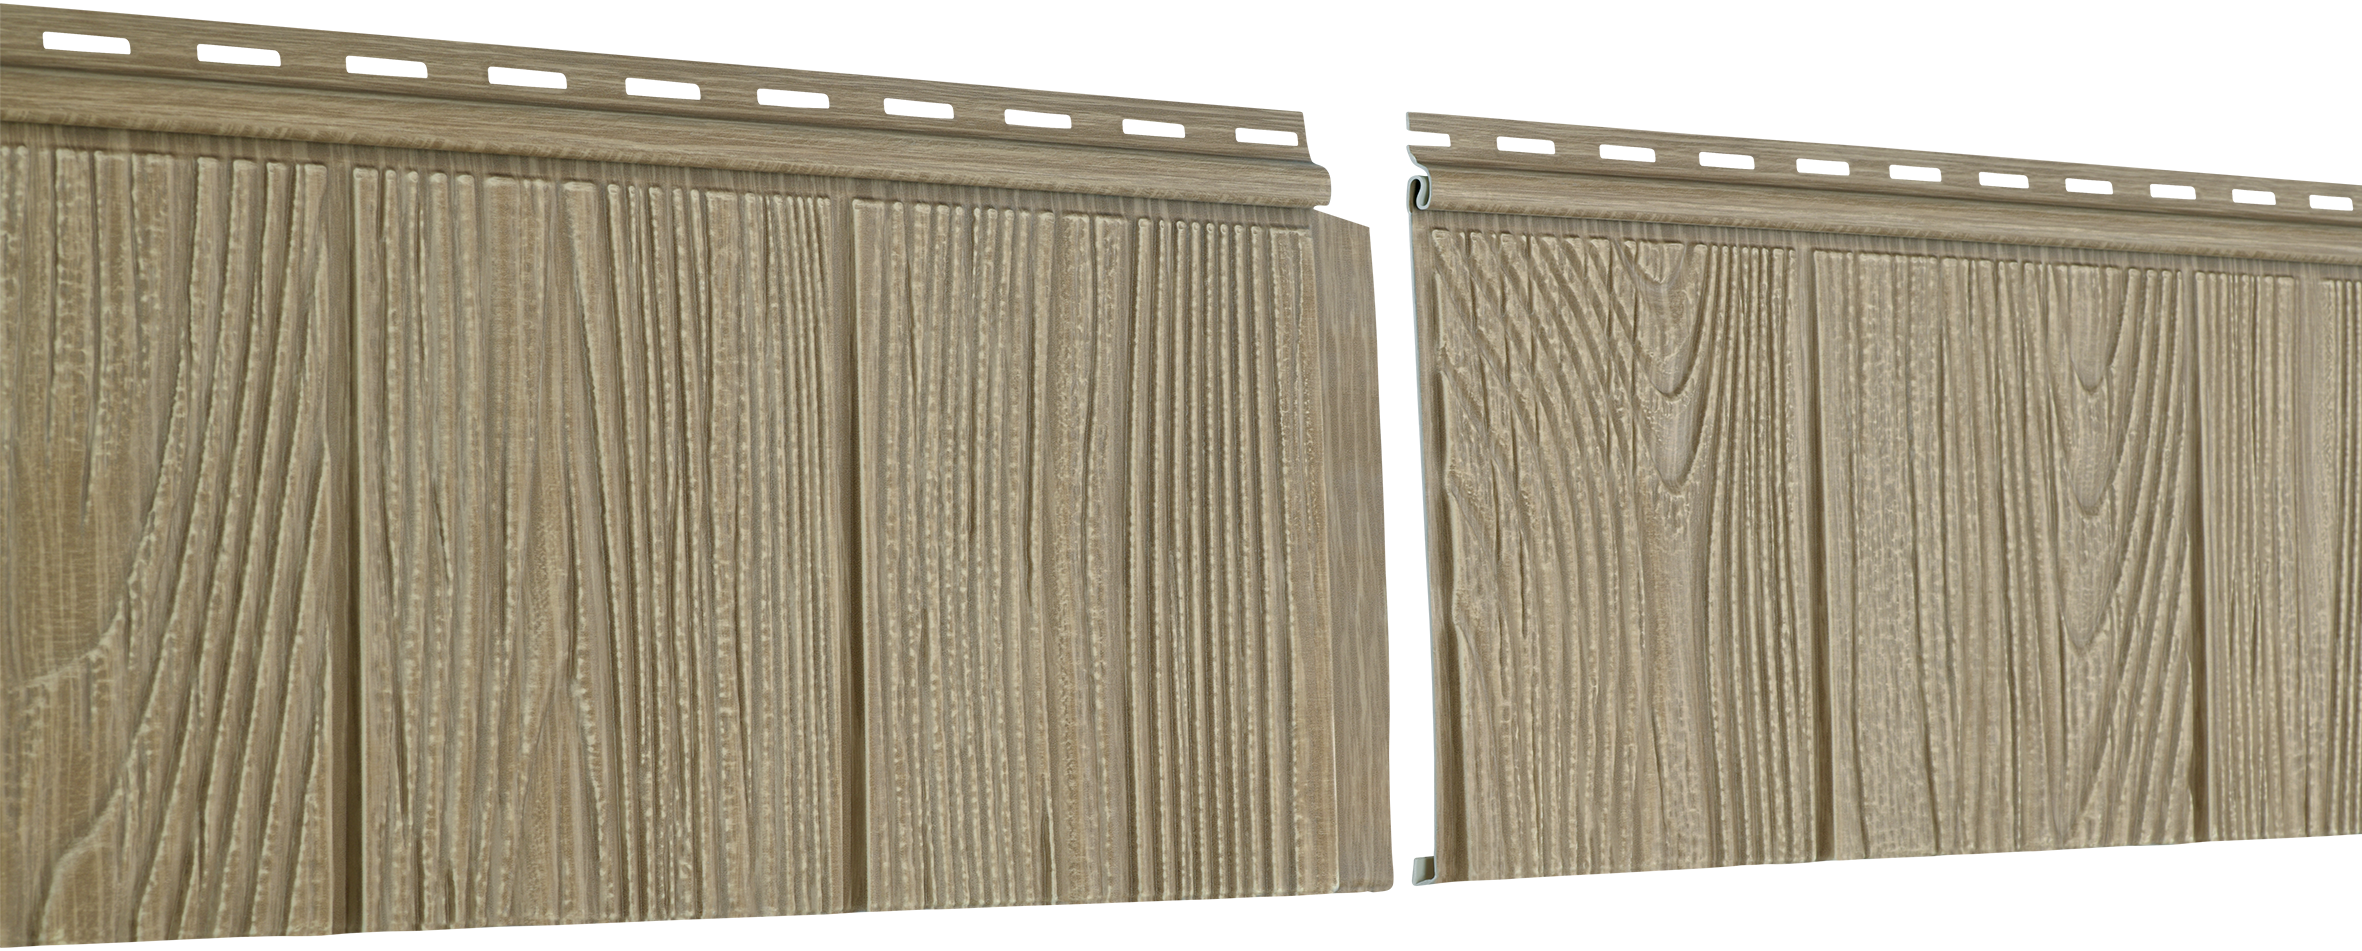 Фасадные панели (цокольный сайдинг) Ю-пласт Хокла S-Lock Щепа Натуральный орех